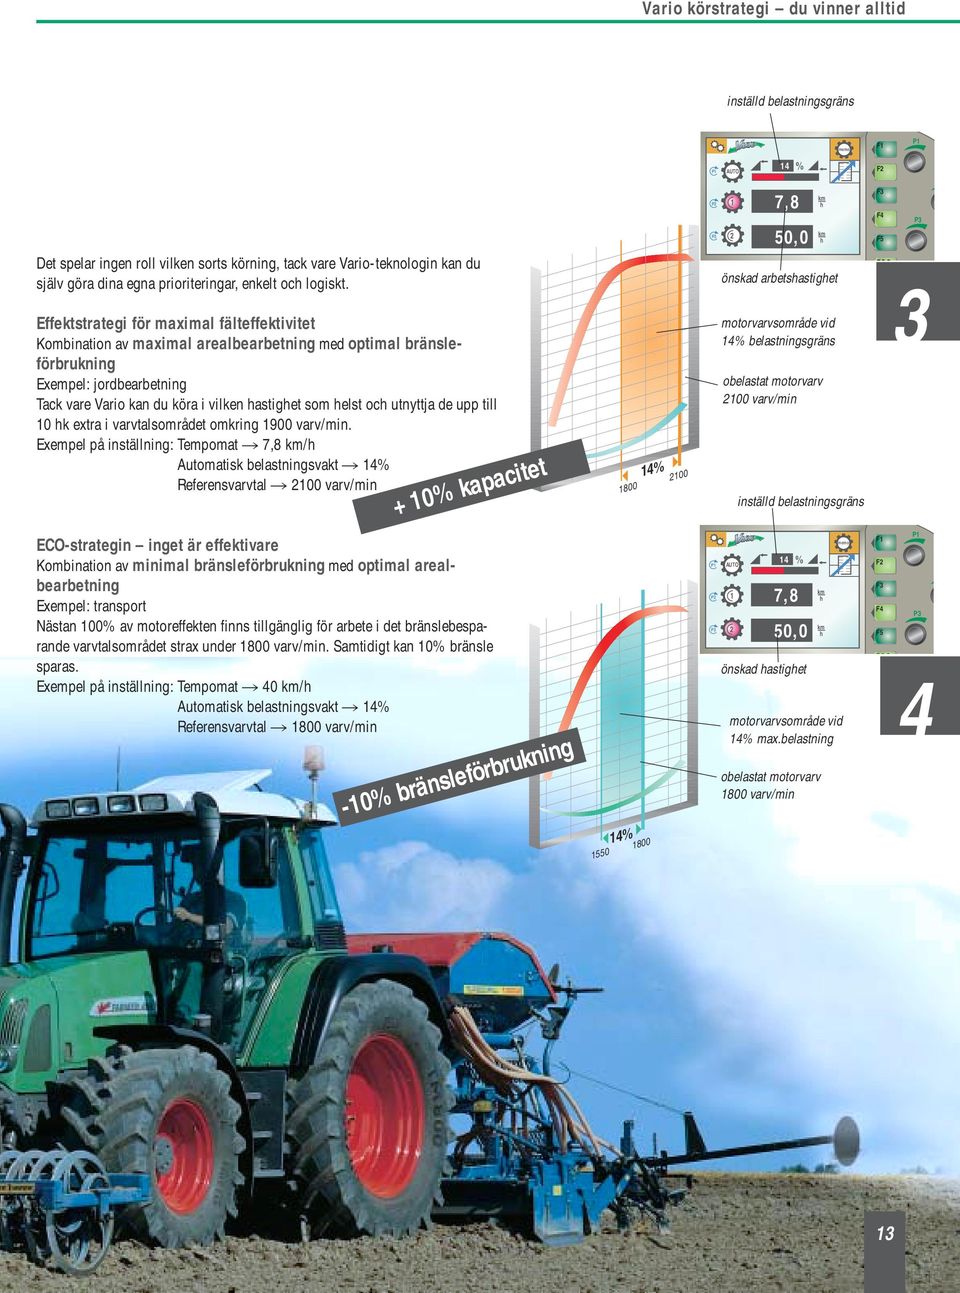 Effektstrategi för maximal fälteffektivitet Kombination av maximal arealbearbetning med optimal bränsleförbrukning Exempel: jordbearbetning Tack vare Vario kan du köra i vilken hastighet som helst